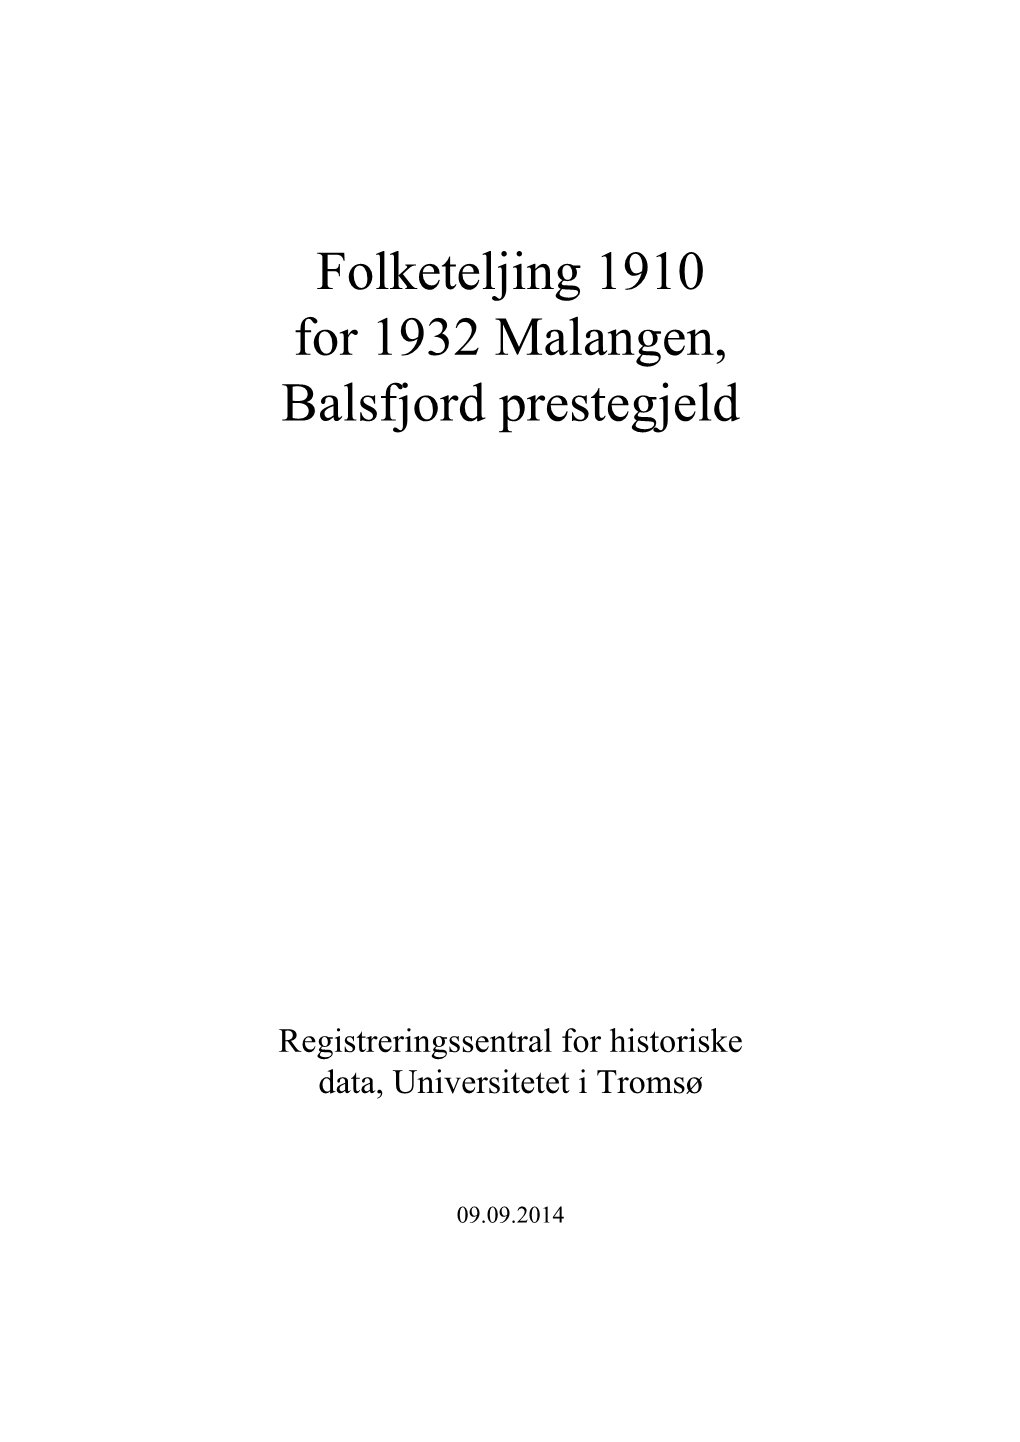 Folketeljing 1910 for 1932 Malangen, Balsfjord Prestegjeld